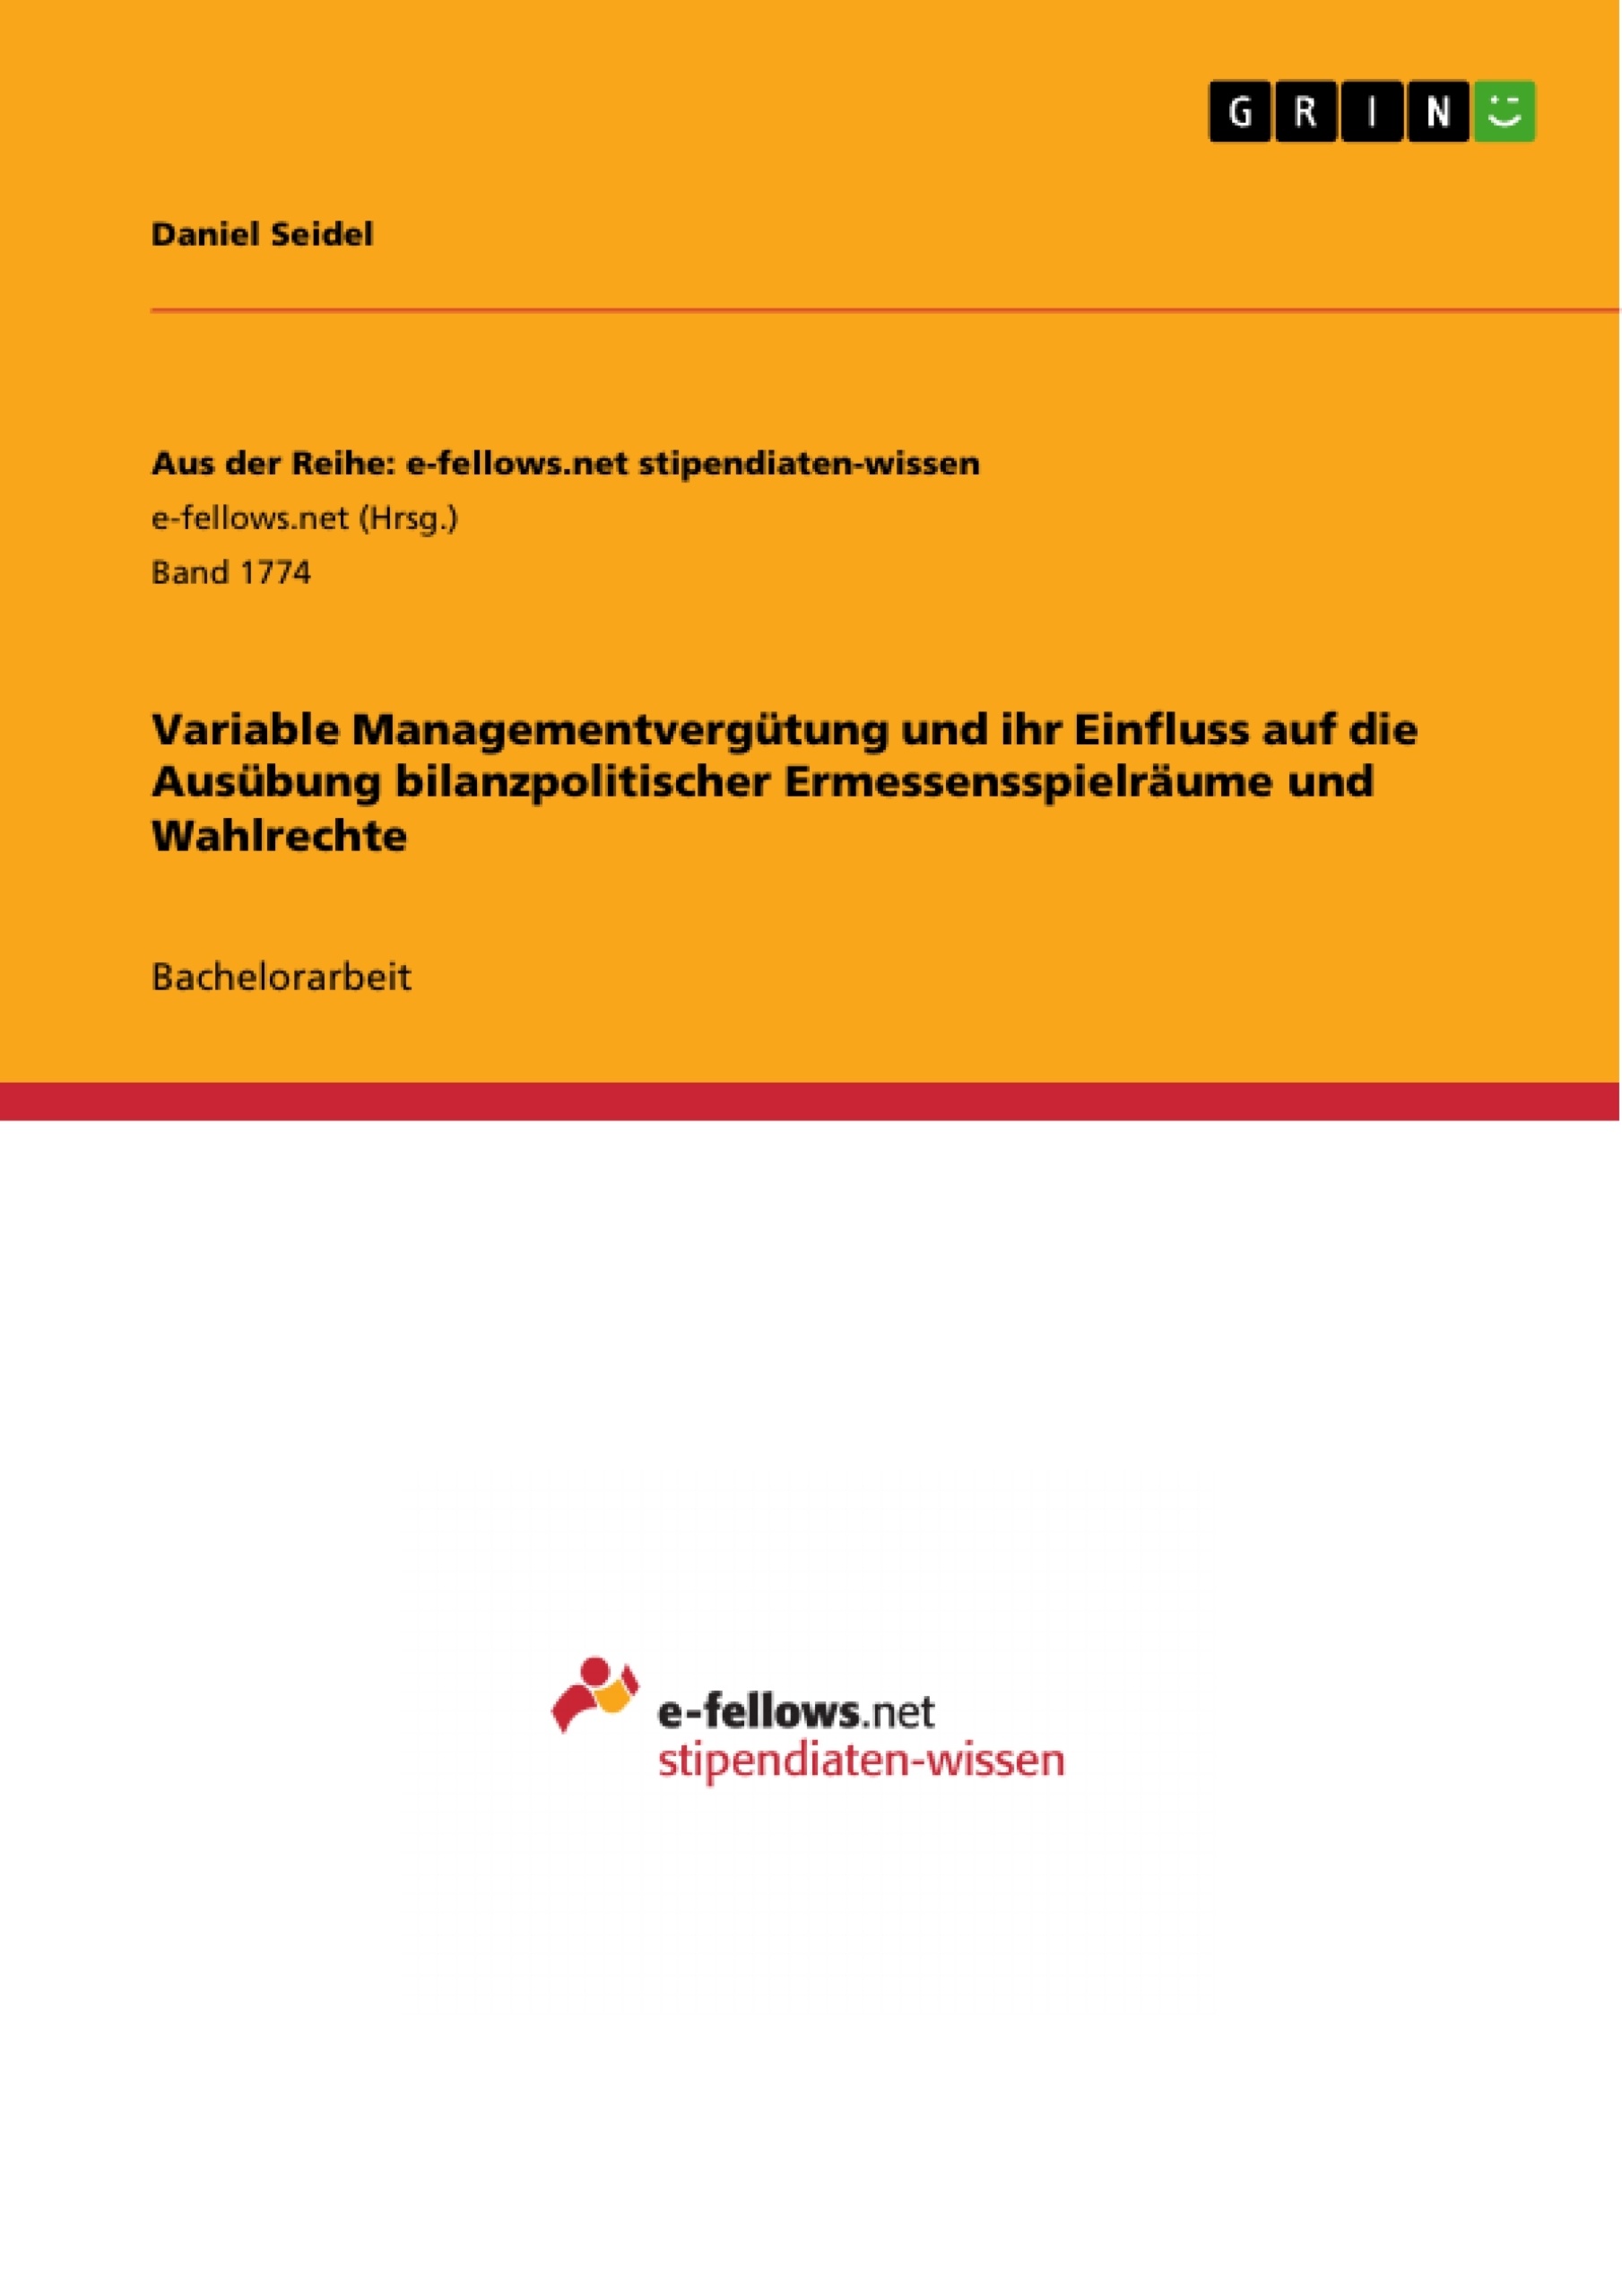 Title: Variable Managementvergütung und ihr Einfluss auf die Ausübung bilanzpolitischer Ermessensspielräume und Wahlrechte